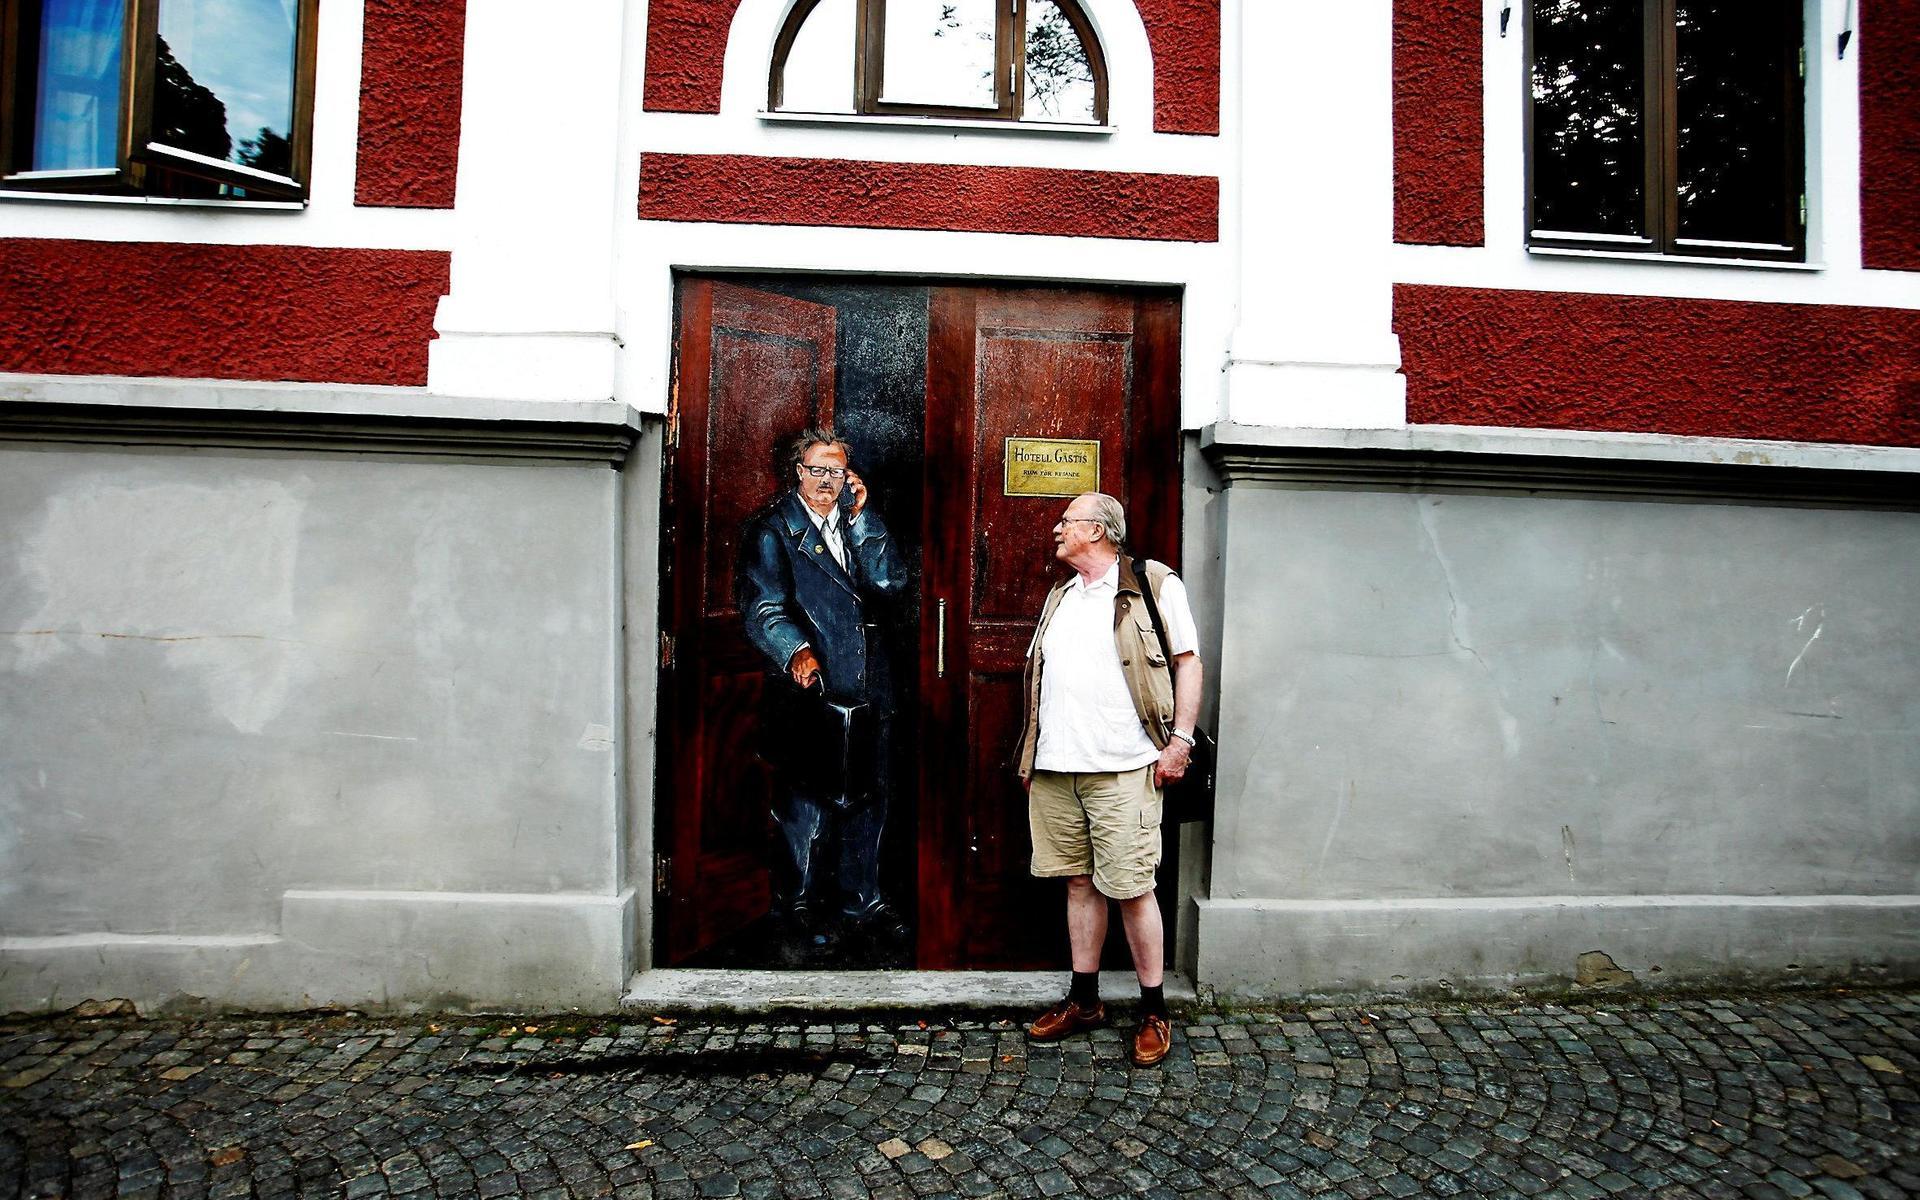 Jan Myrdal flyttade till Varberg sommaren 2012 och kollade förstås målningen av sig själv på Hotell Gästis.